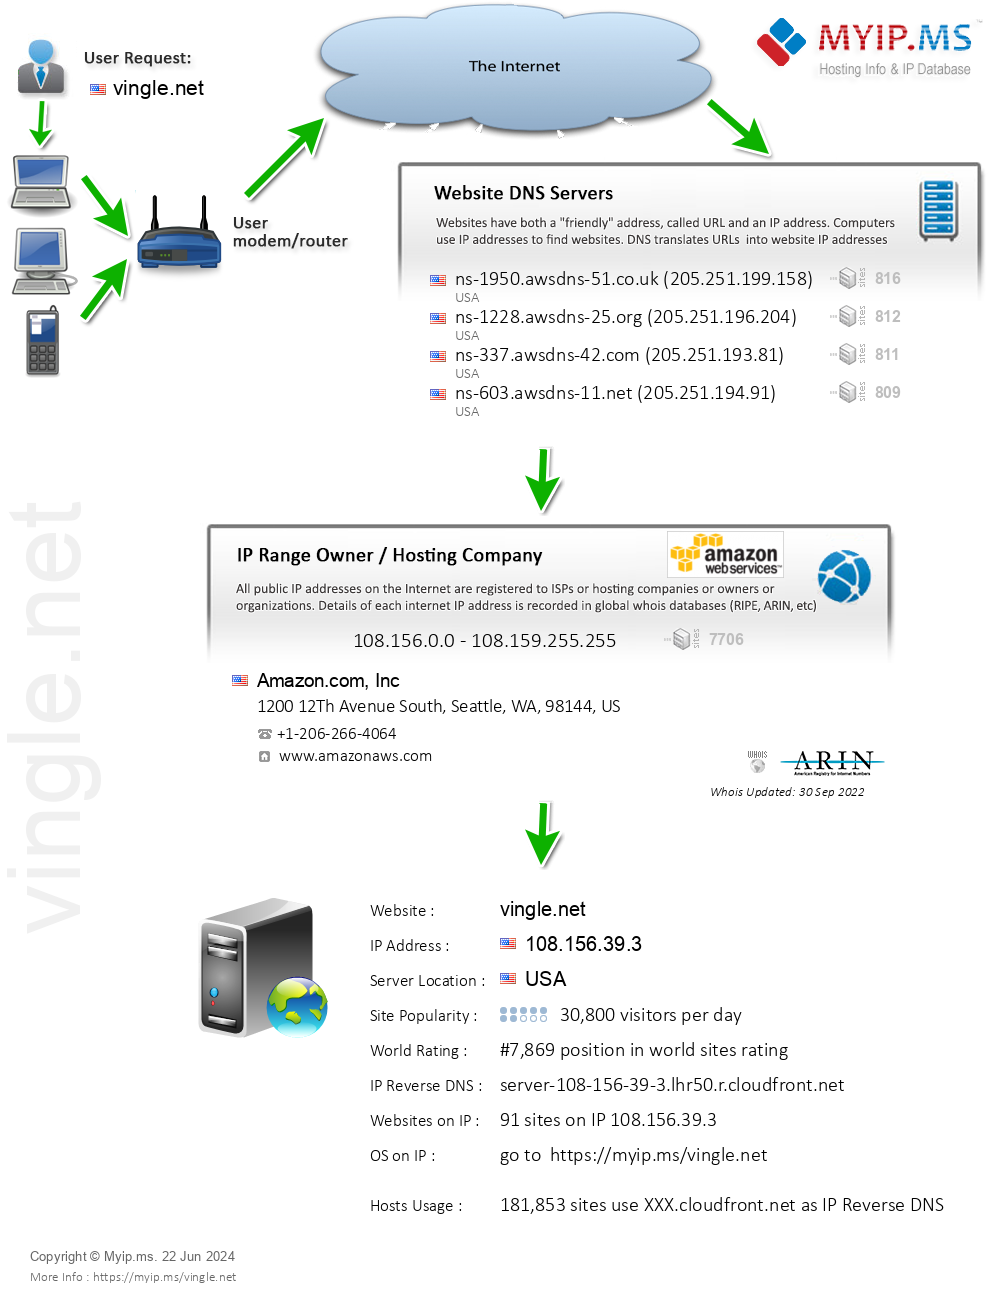 Vingle.net - Website Hosting Visual IP Diagram